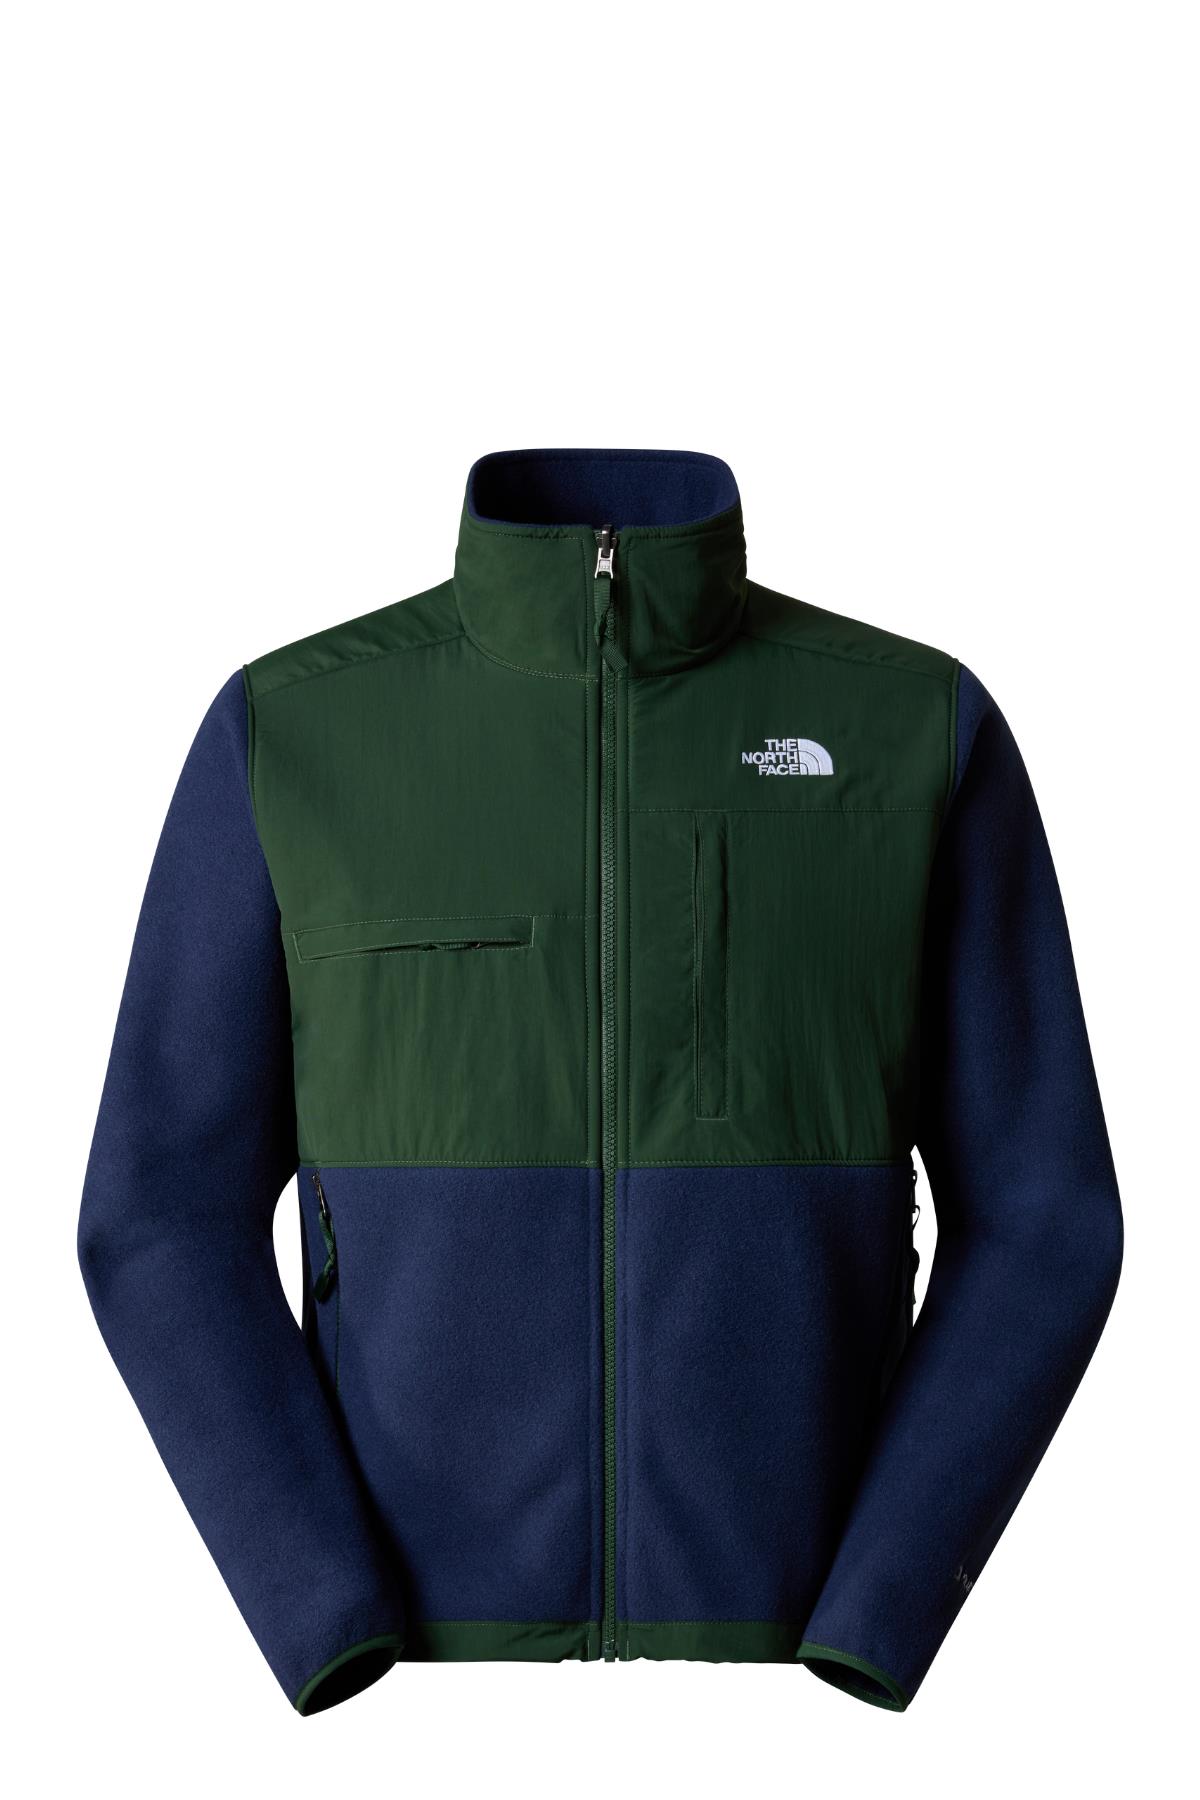 The North Face Erkek Denali Jacket Ceket Lacivert Yeşil